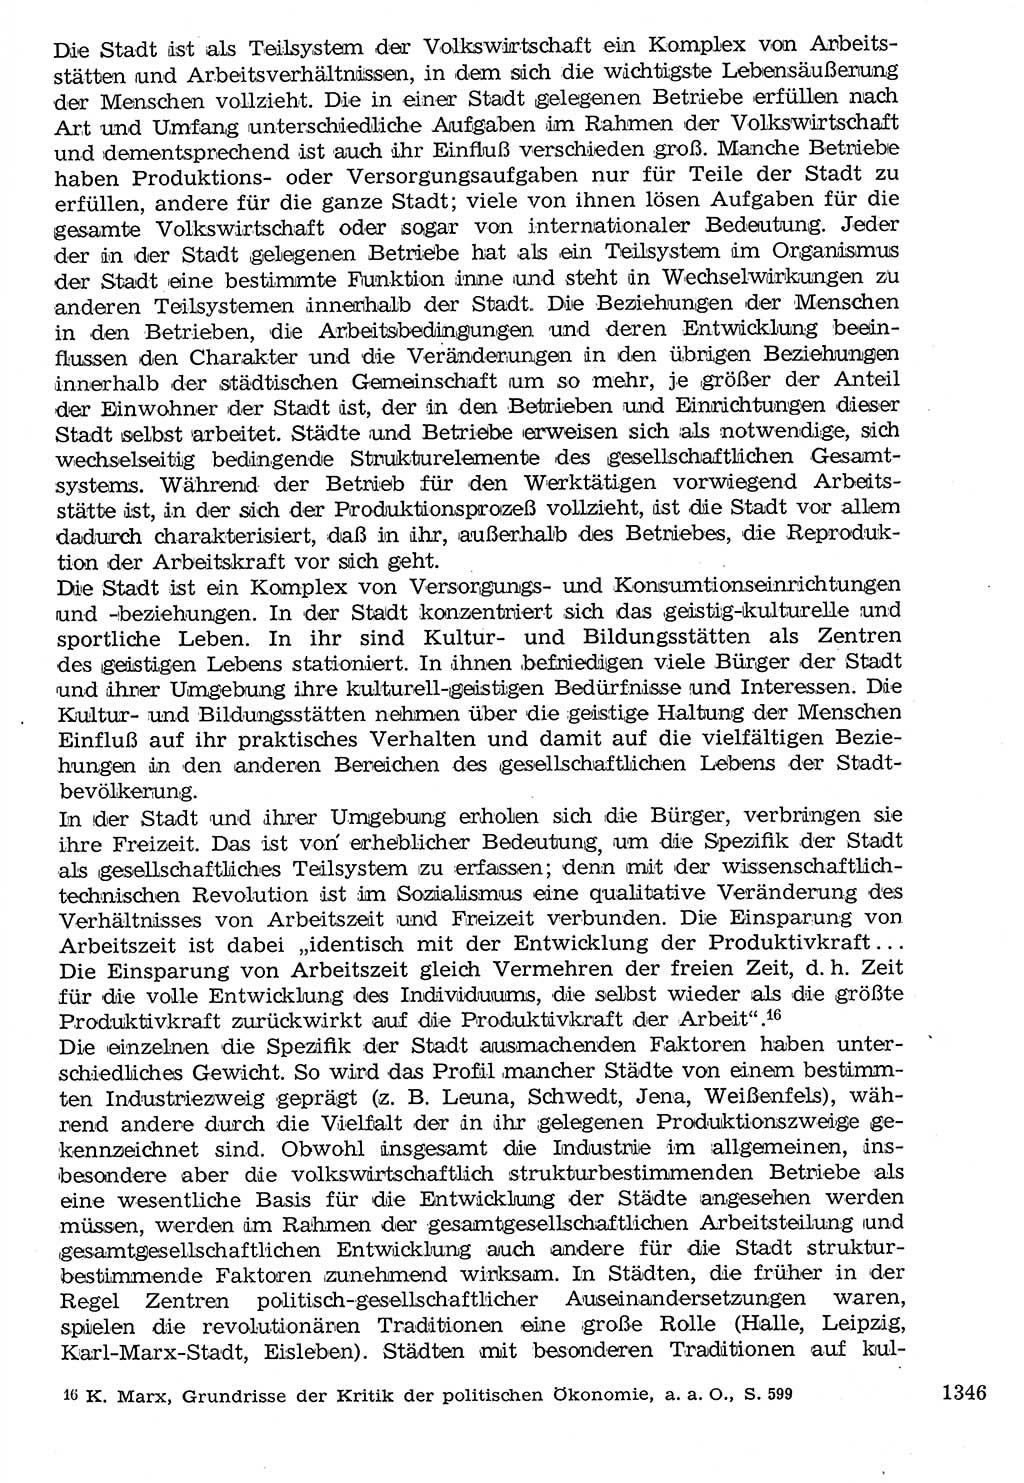 Staat und Recht (StuR), 17. Jahrgang [Deutsche Demokratische Republik (DDR)] 1968, Seite 1346 (StuR DDR 1968, S. 1346)